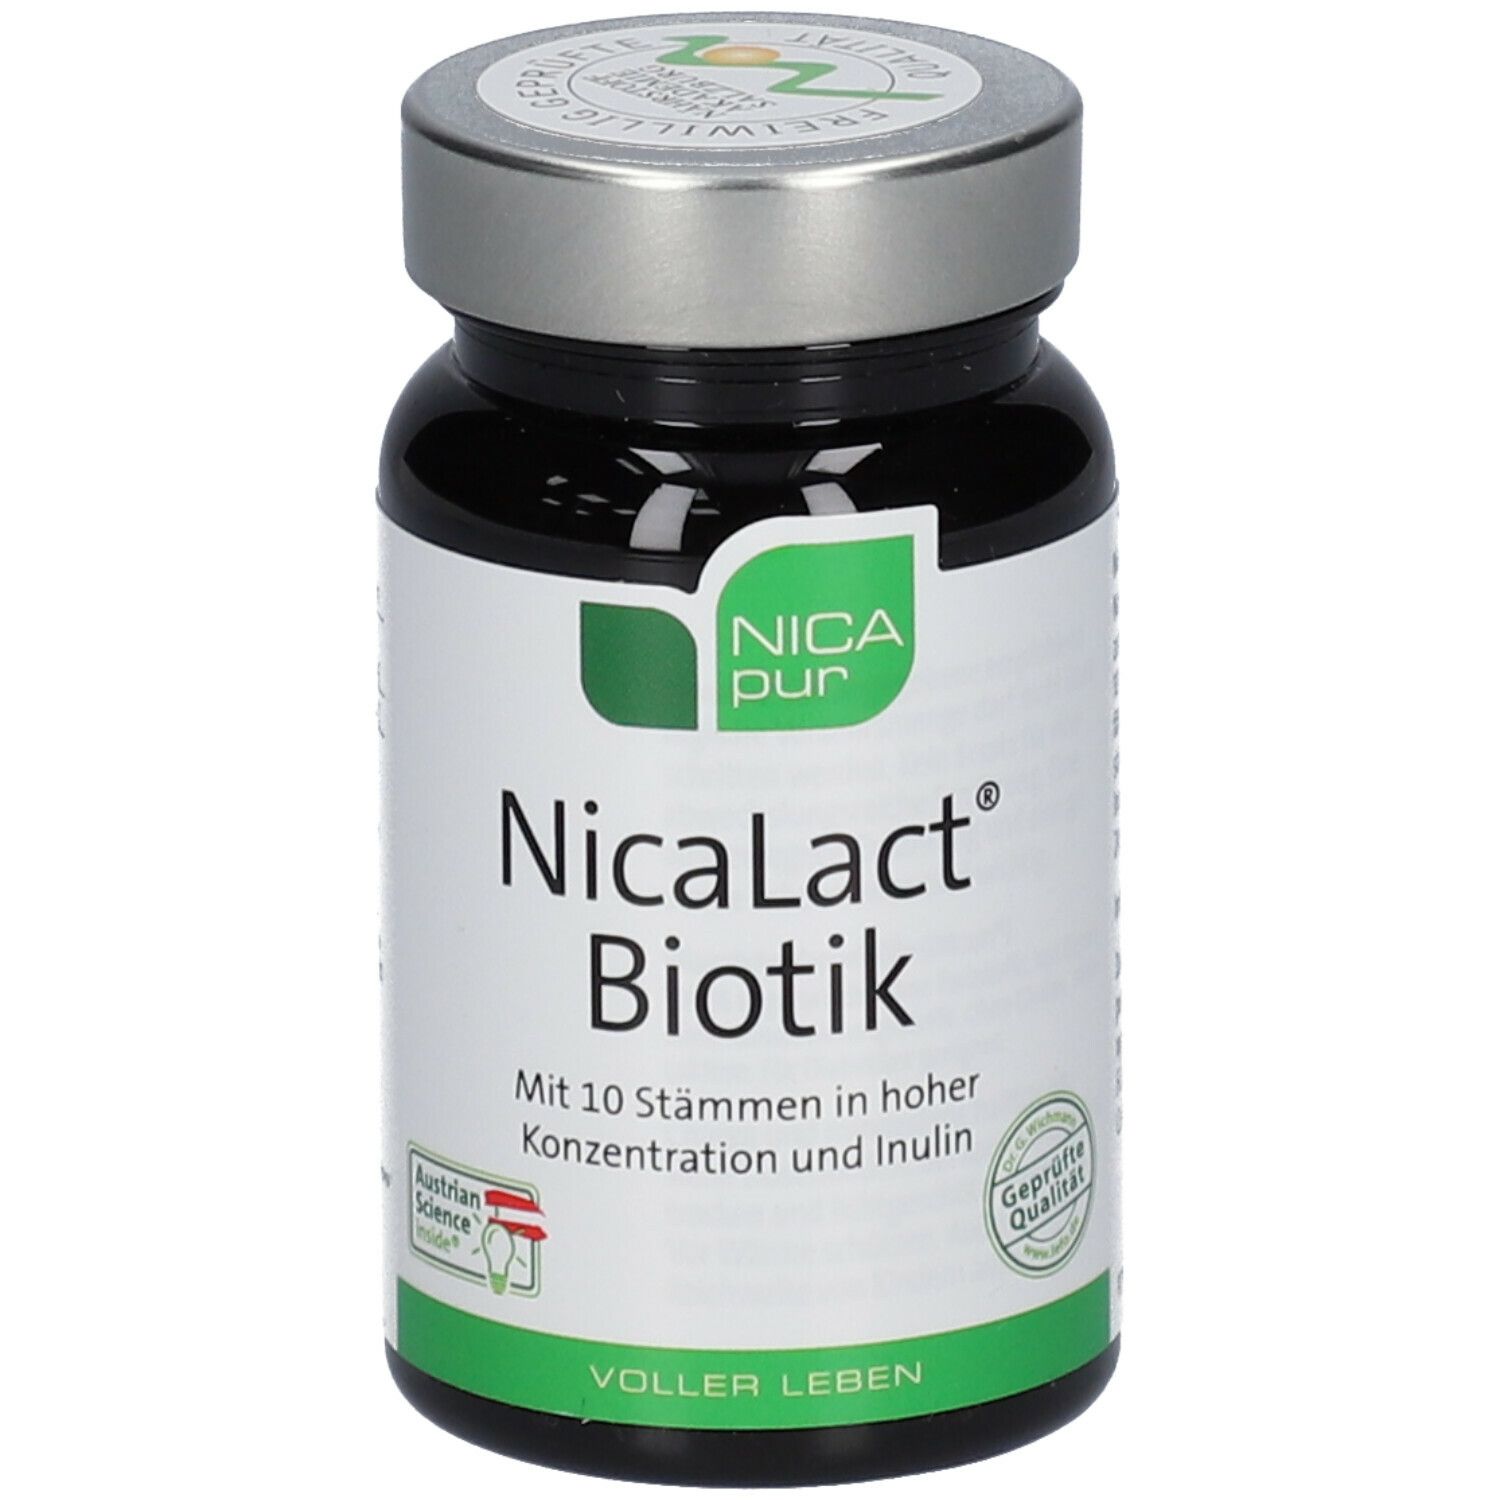 NICApur® NicaLact® Biotik